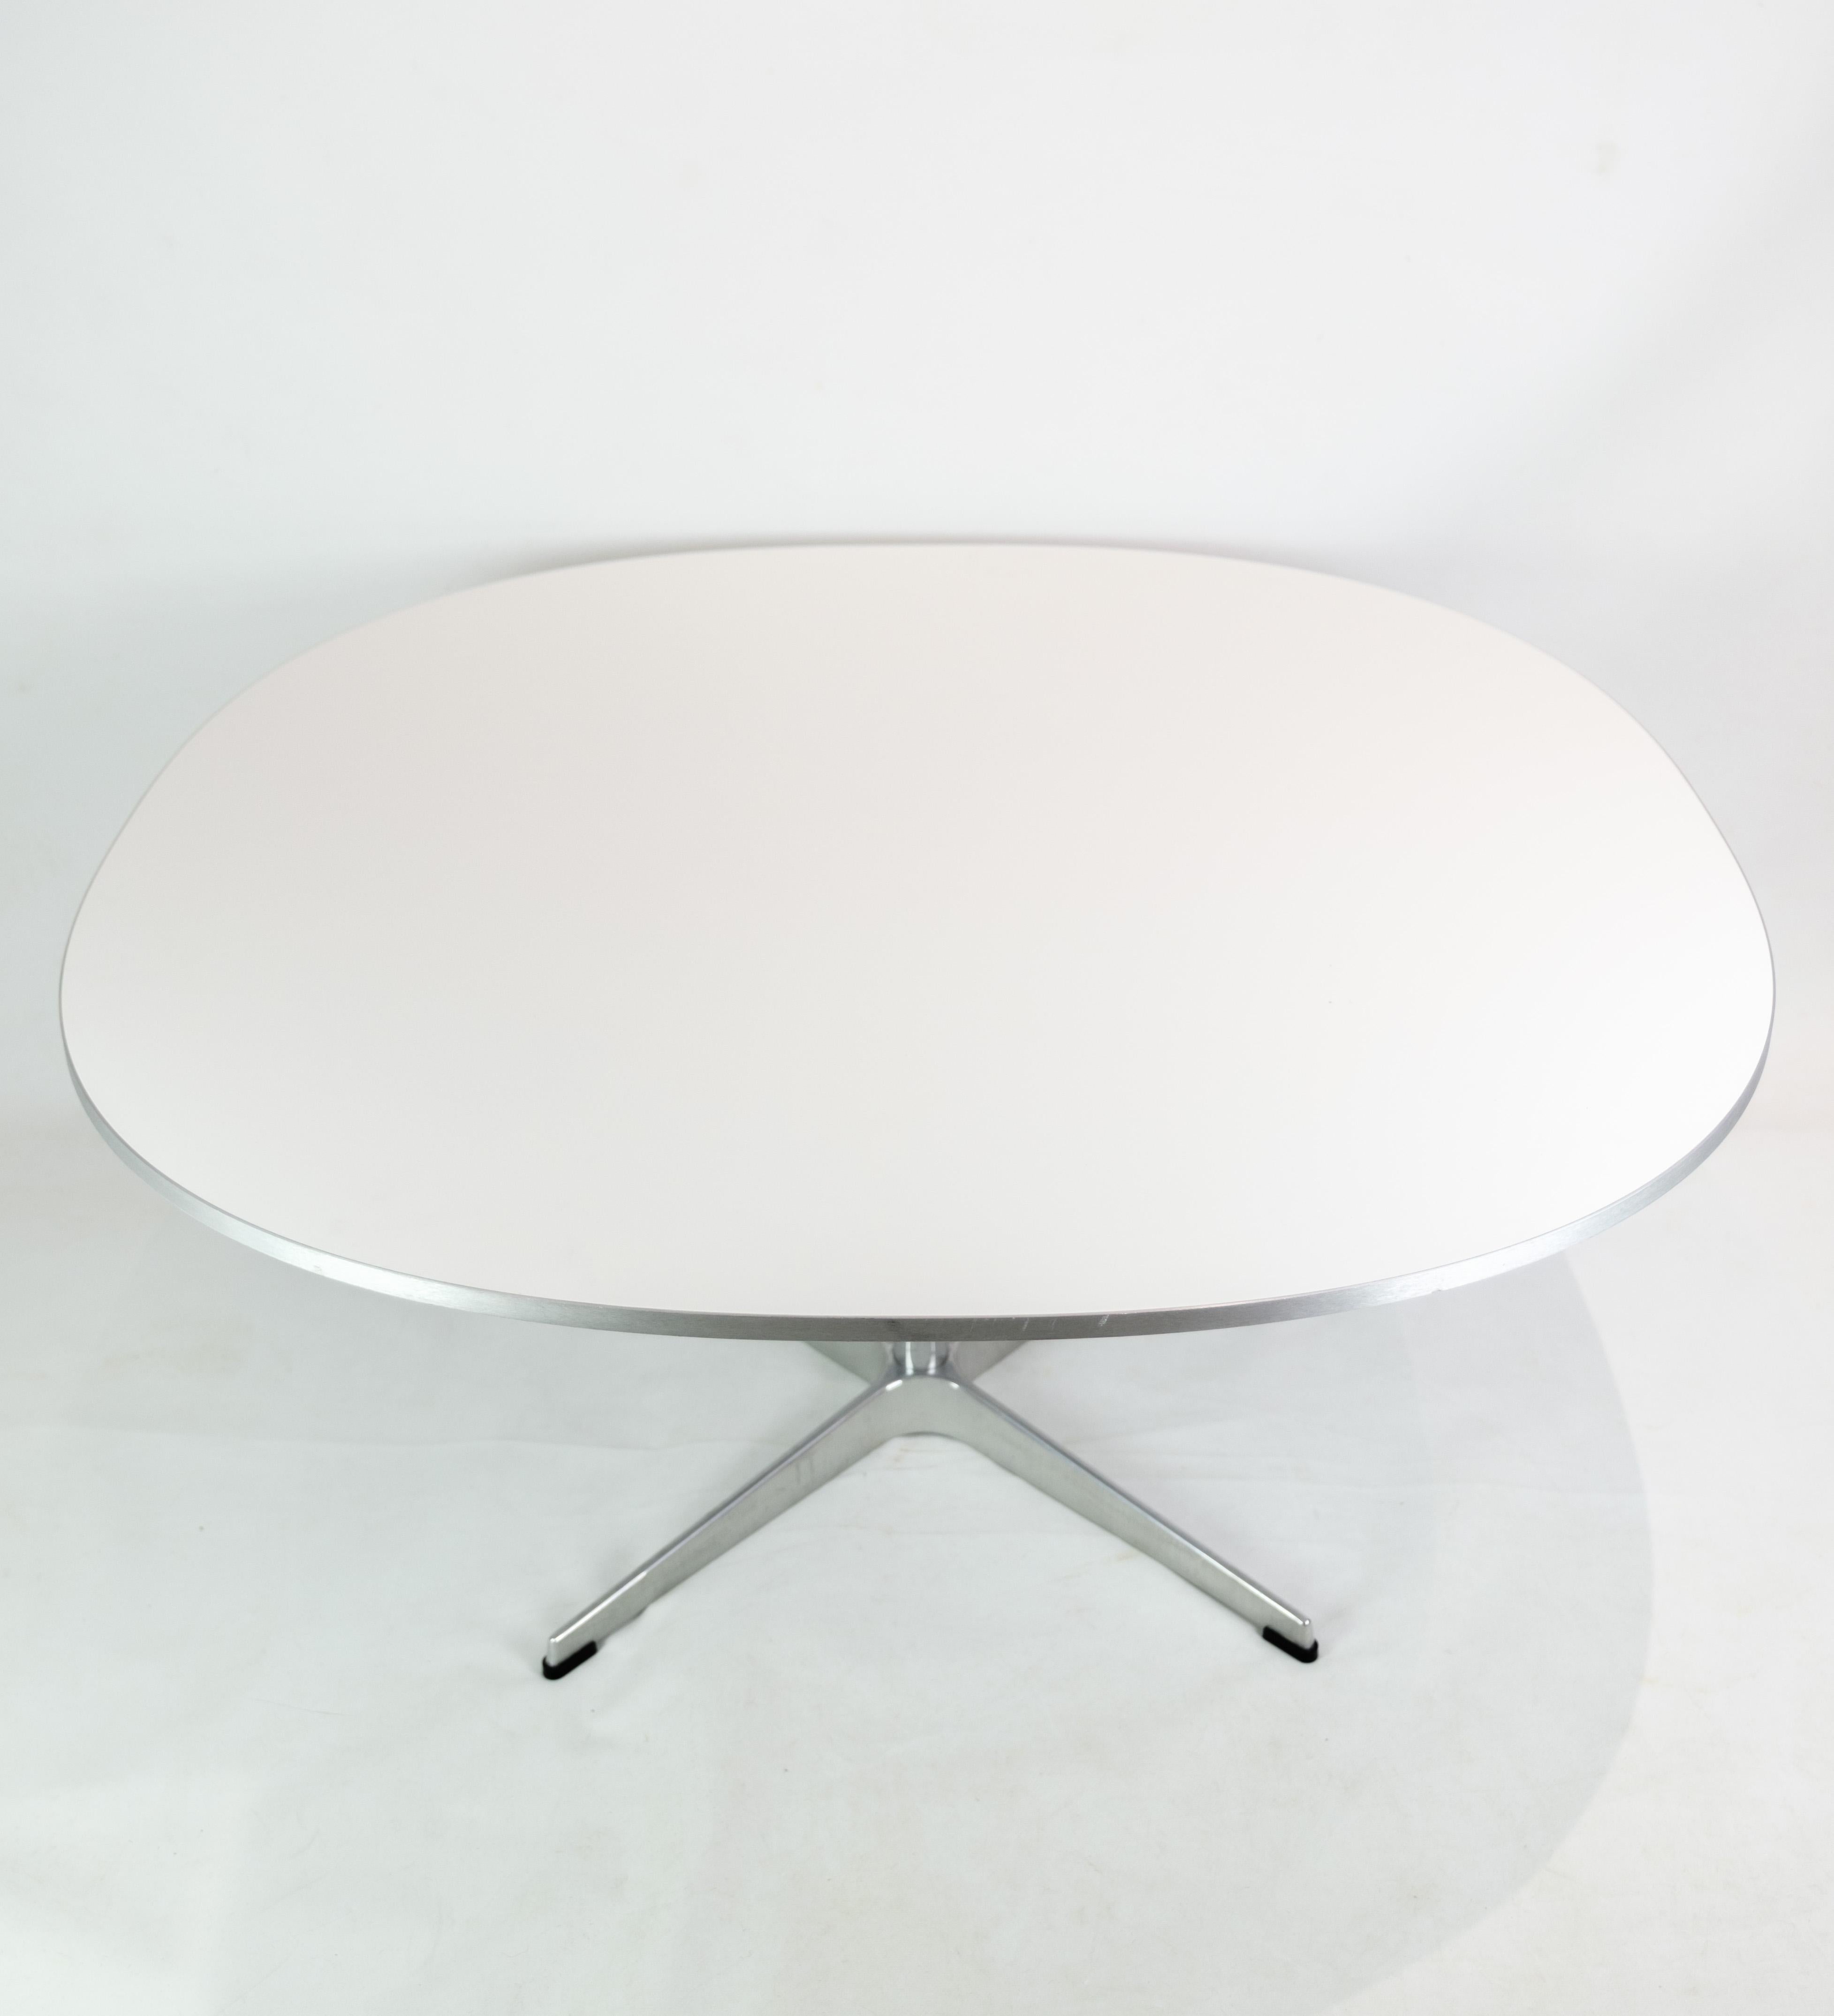 Table basse, conçue par Piet Hein/Bruno Mathsson/Arne Jacobsen et produite par Fritz Hansen en 2018. La table est en stratifié blanc avec un bord en aluminium argenté et un cadre en aluminium. Estampillé avec la marque originale et le numéro de